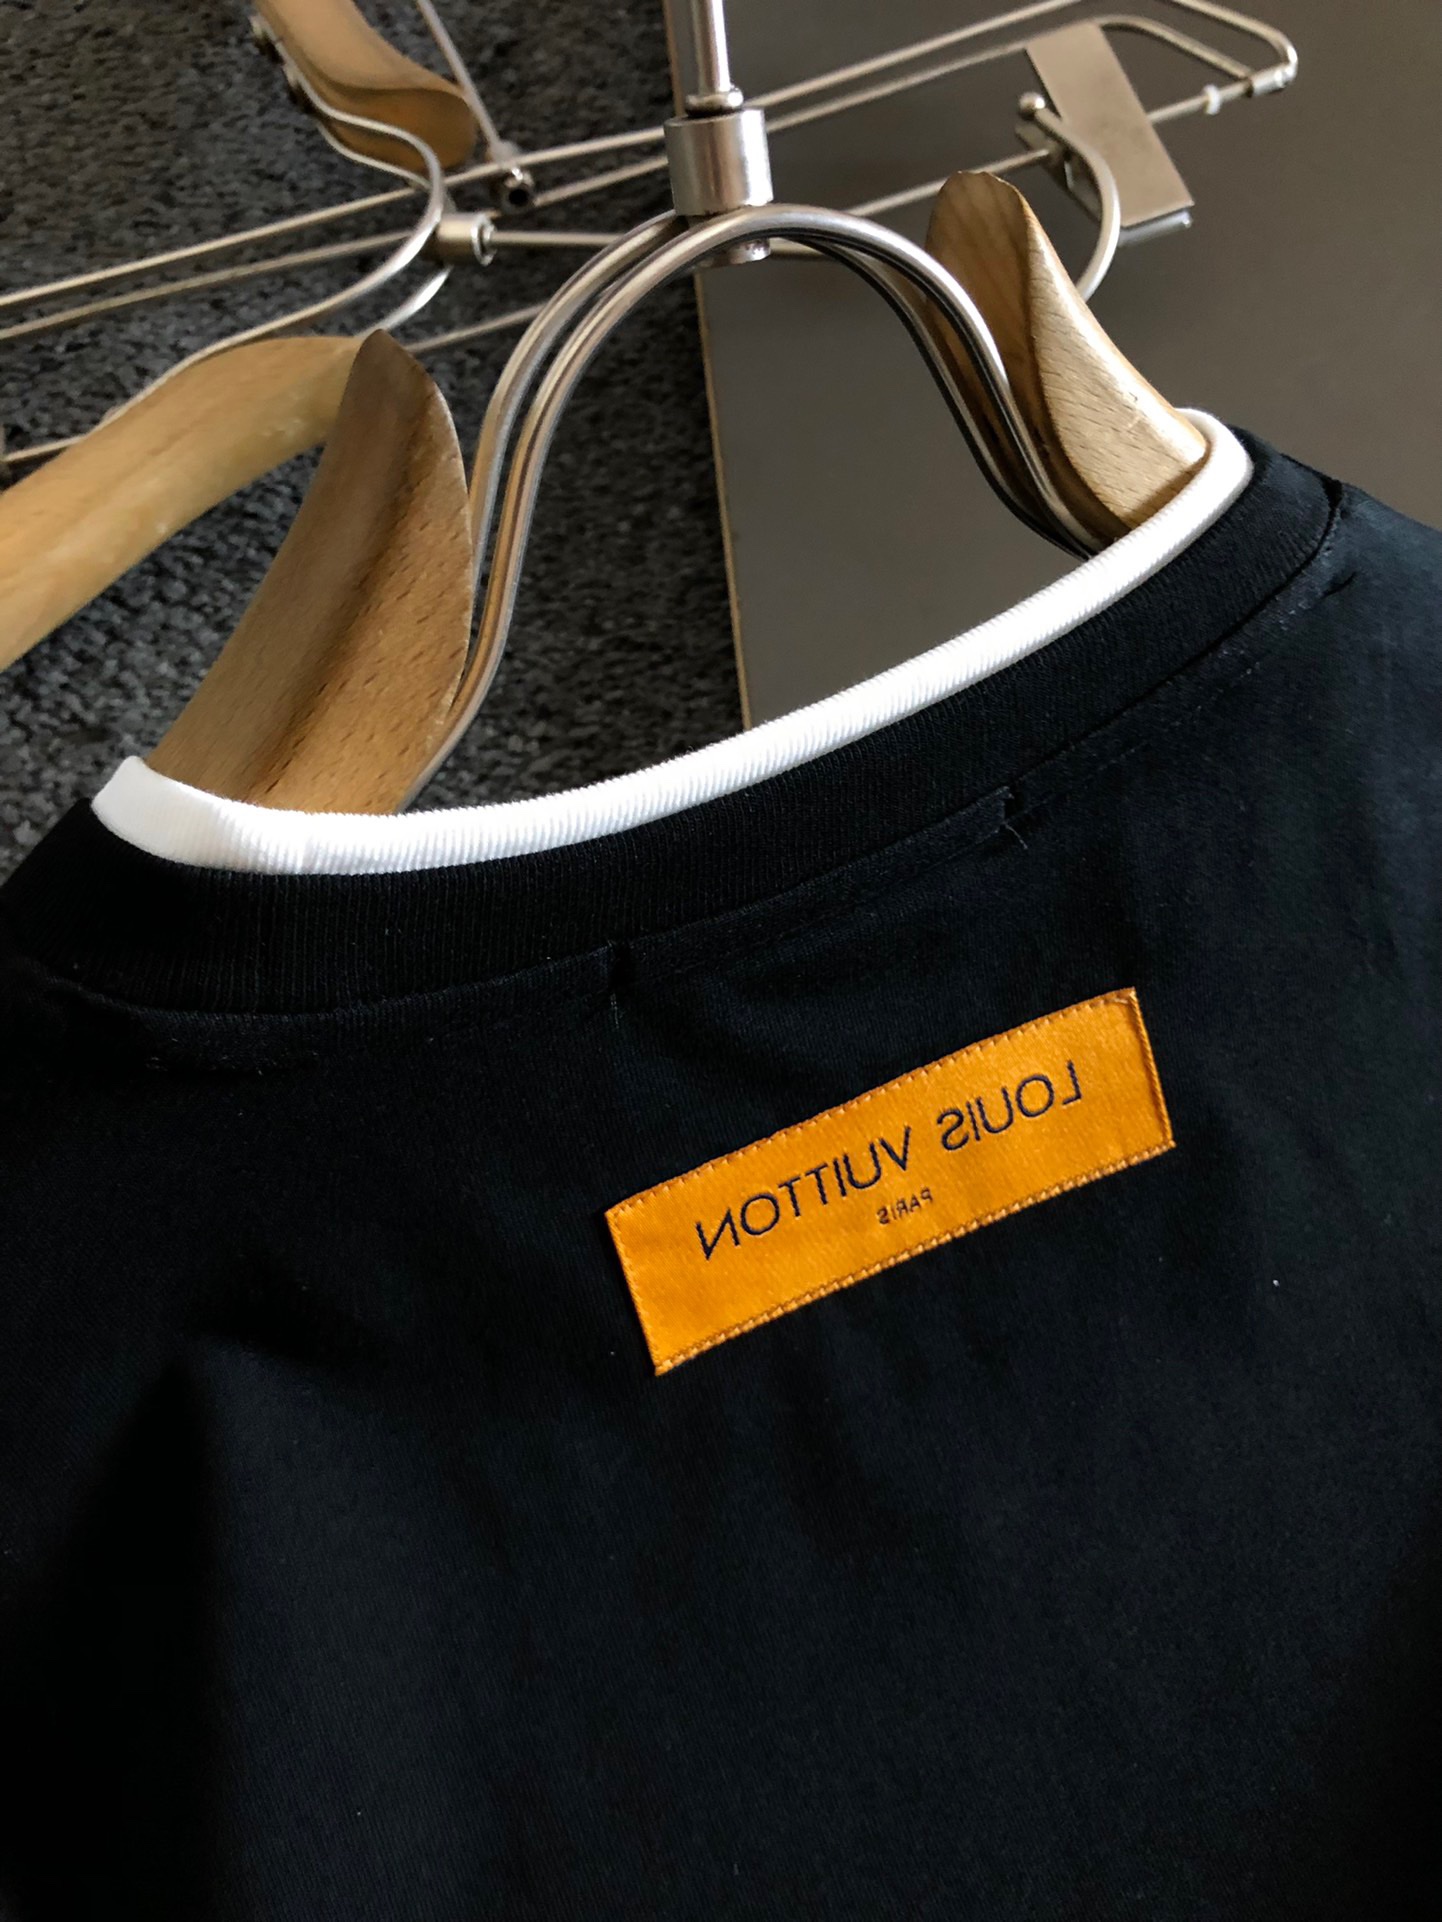 Camiseta Louis Vuitton  Camiseta Masculina Louis-Vuitton Usado